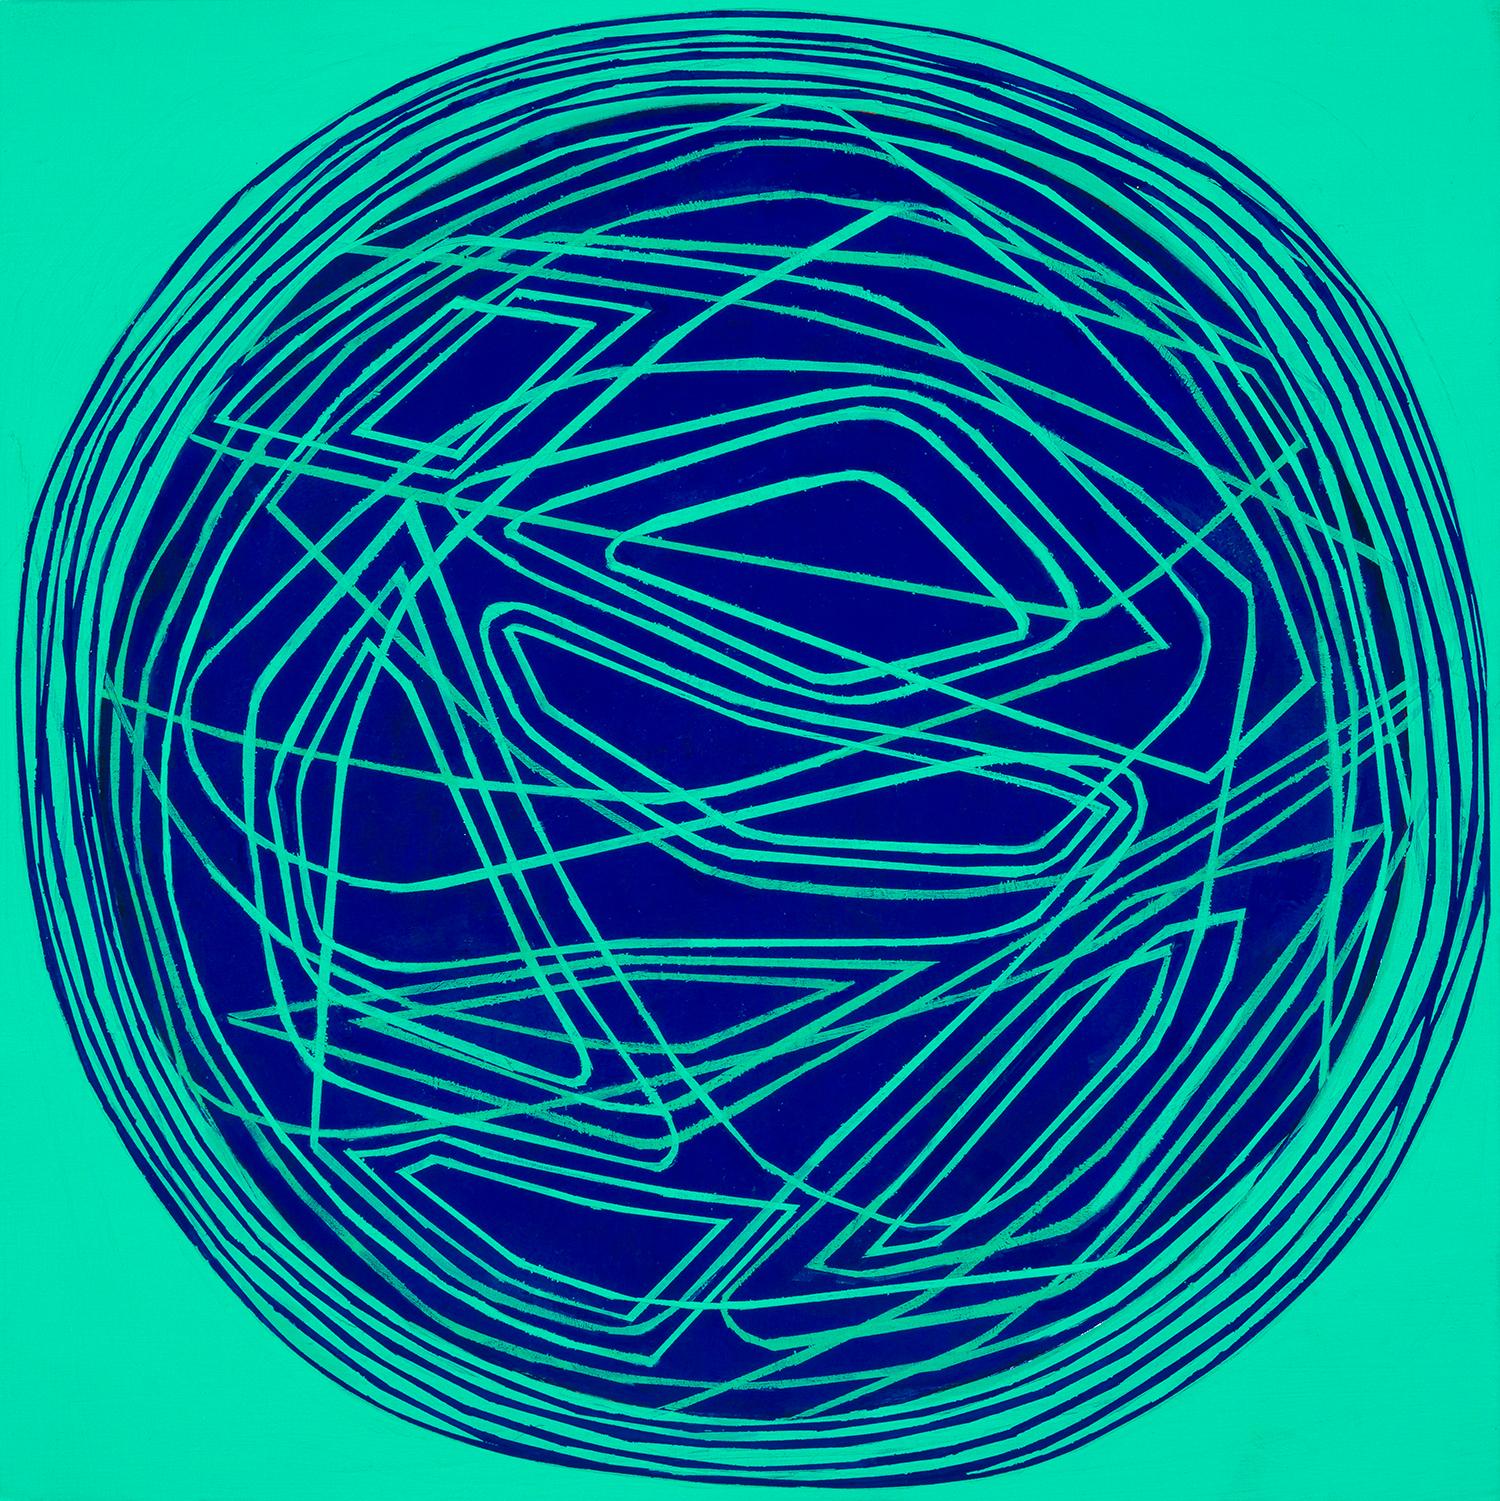 Paula Cahill Abstract Painting – Rundes und rundes: kleines abstraktes Ölgemälde mit kreisförmigen blauen Linien auf Grün-Blau auf Grün-Blau